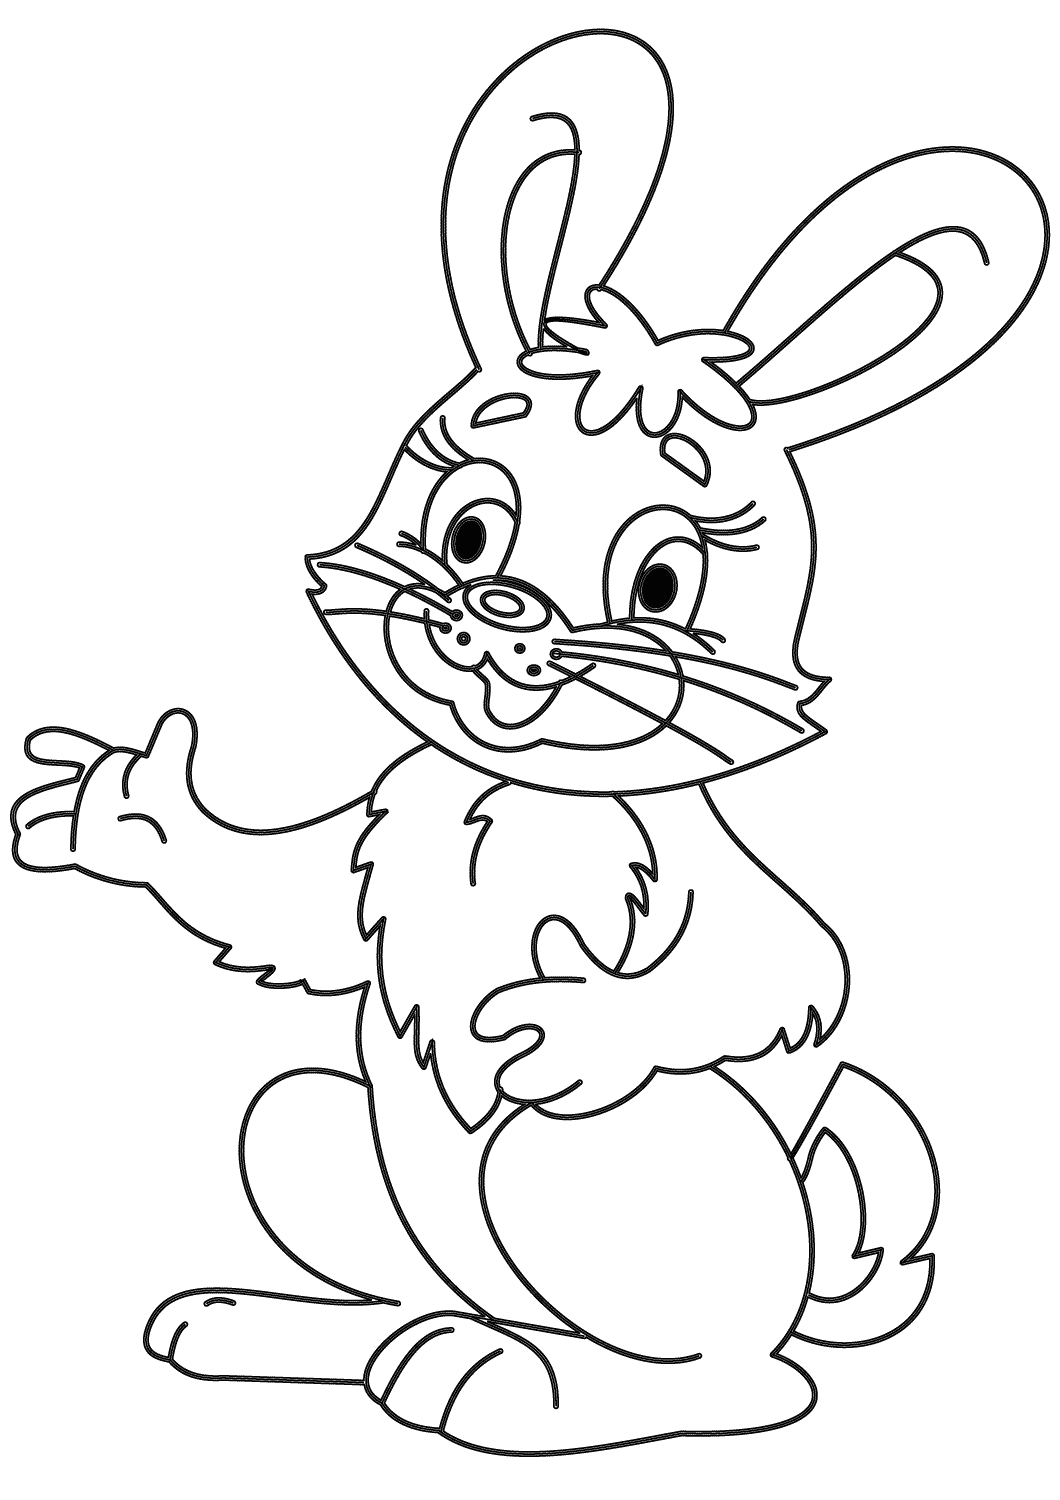 Cutie conejito de dibujos animados hablando algo de Bunny